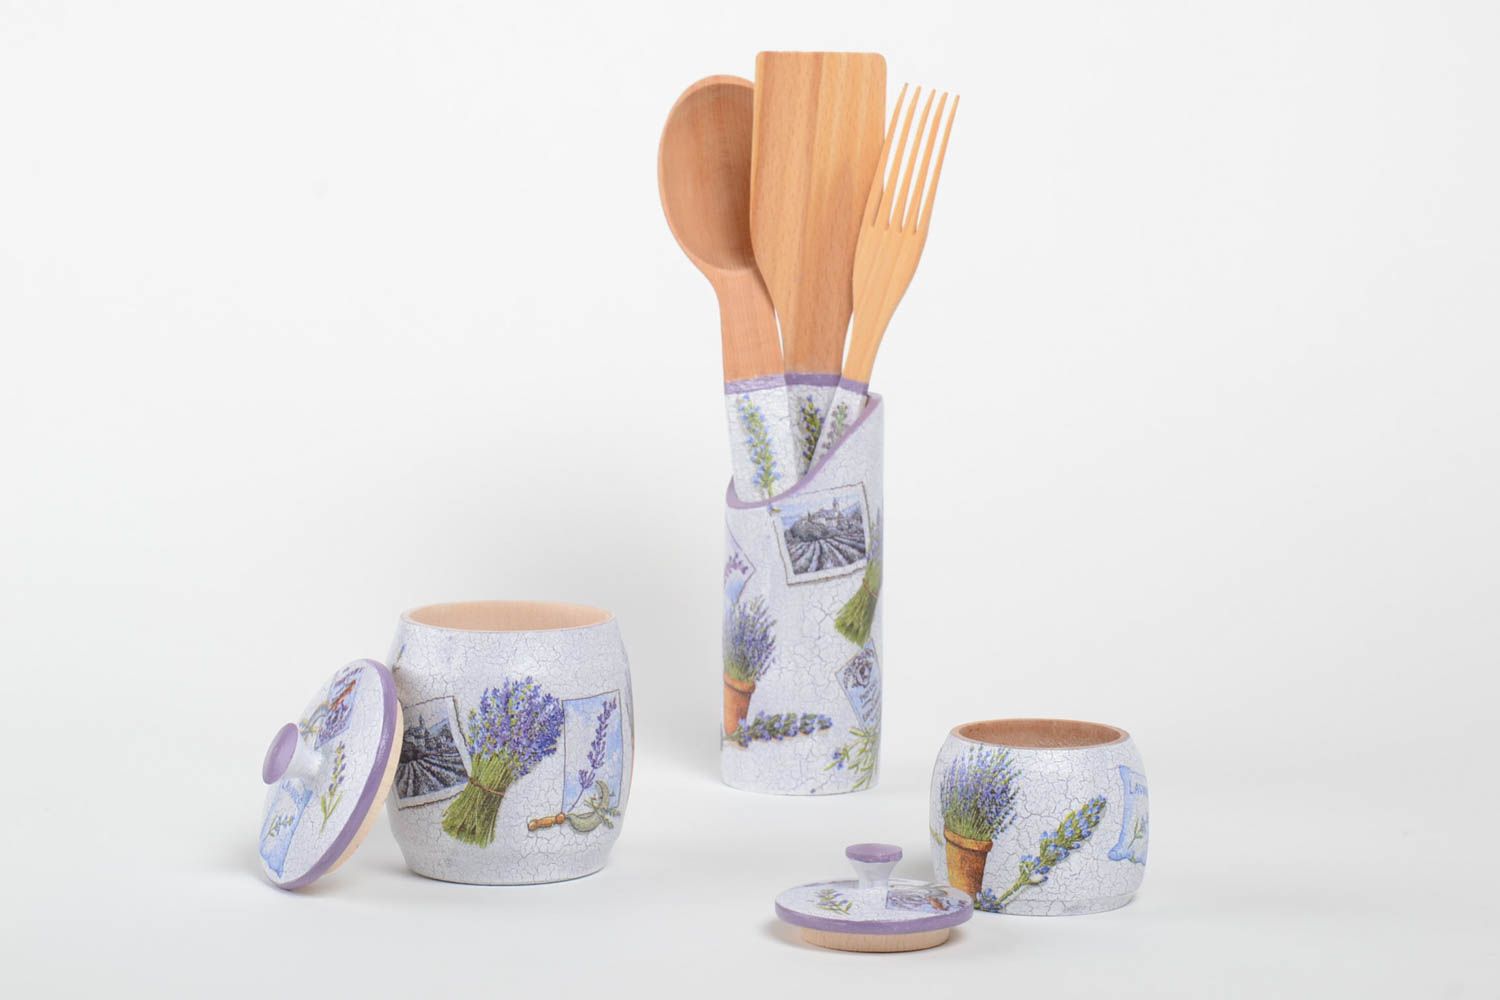 Set of kitchen accessories wooden stylish kitchenware handmade wooden utensils photo 3